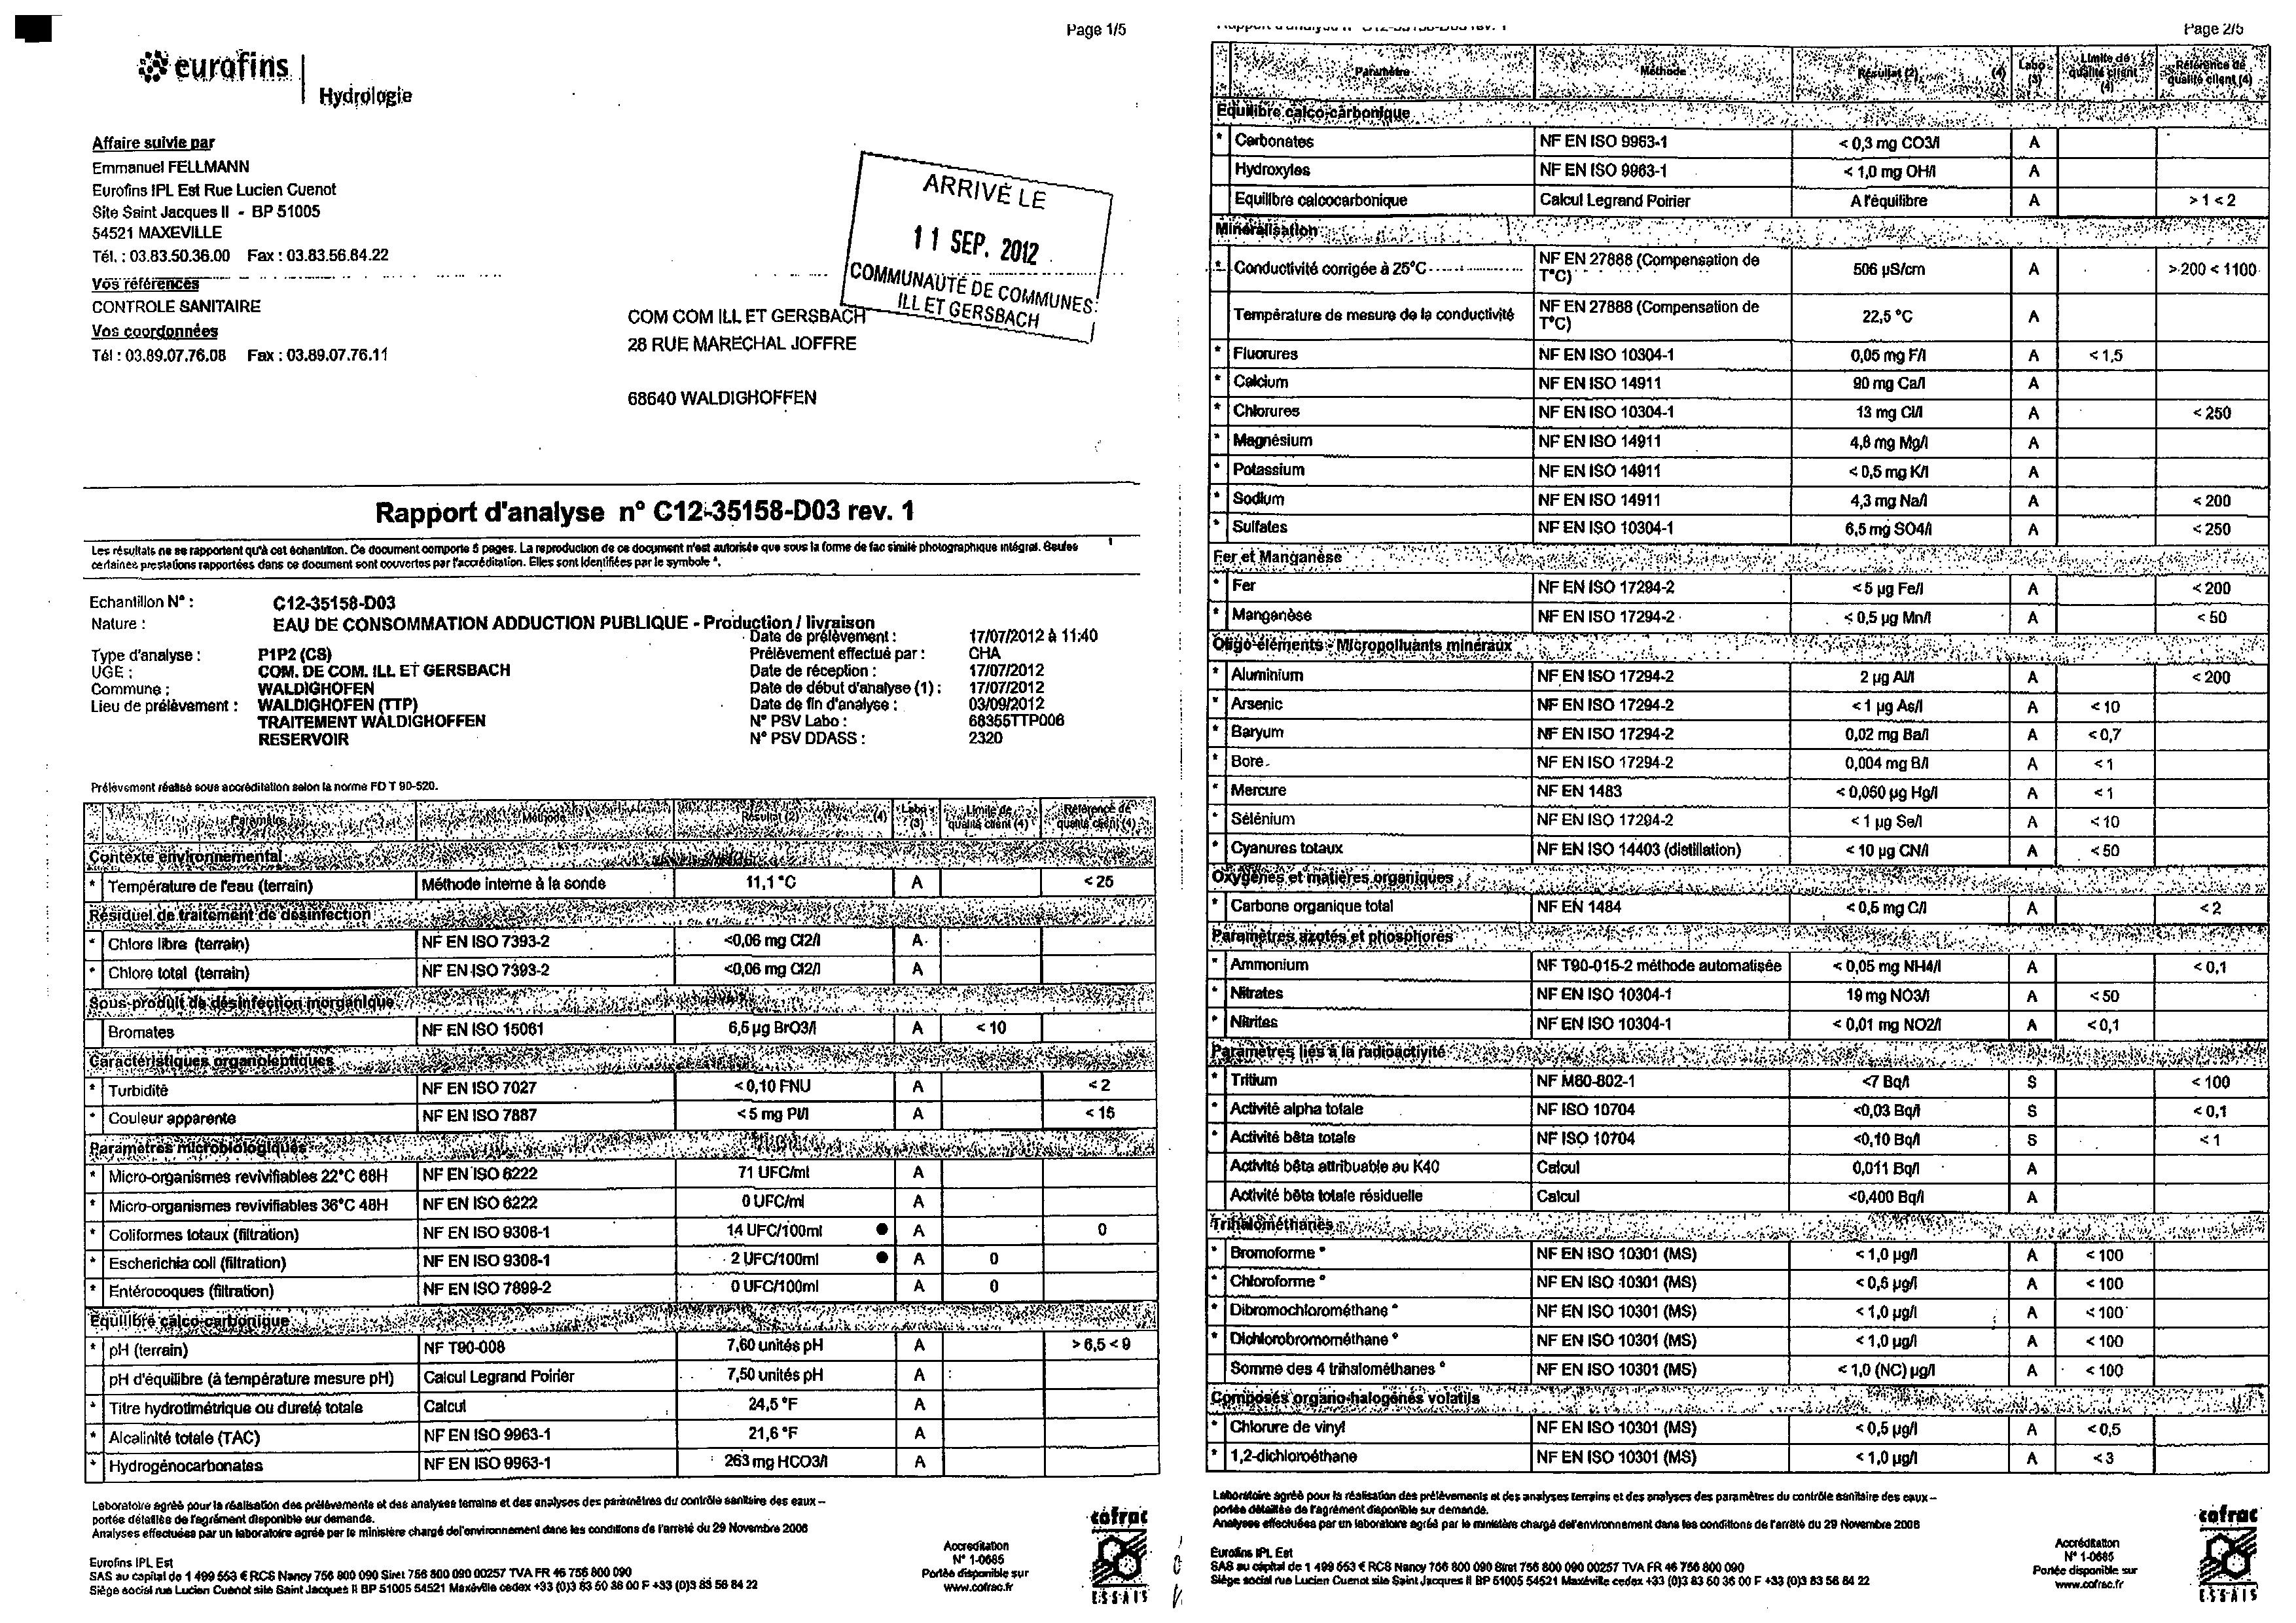 Rapport d'analyse d'eau potable n°C12-35158-D03 du 07/09/2012